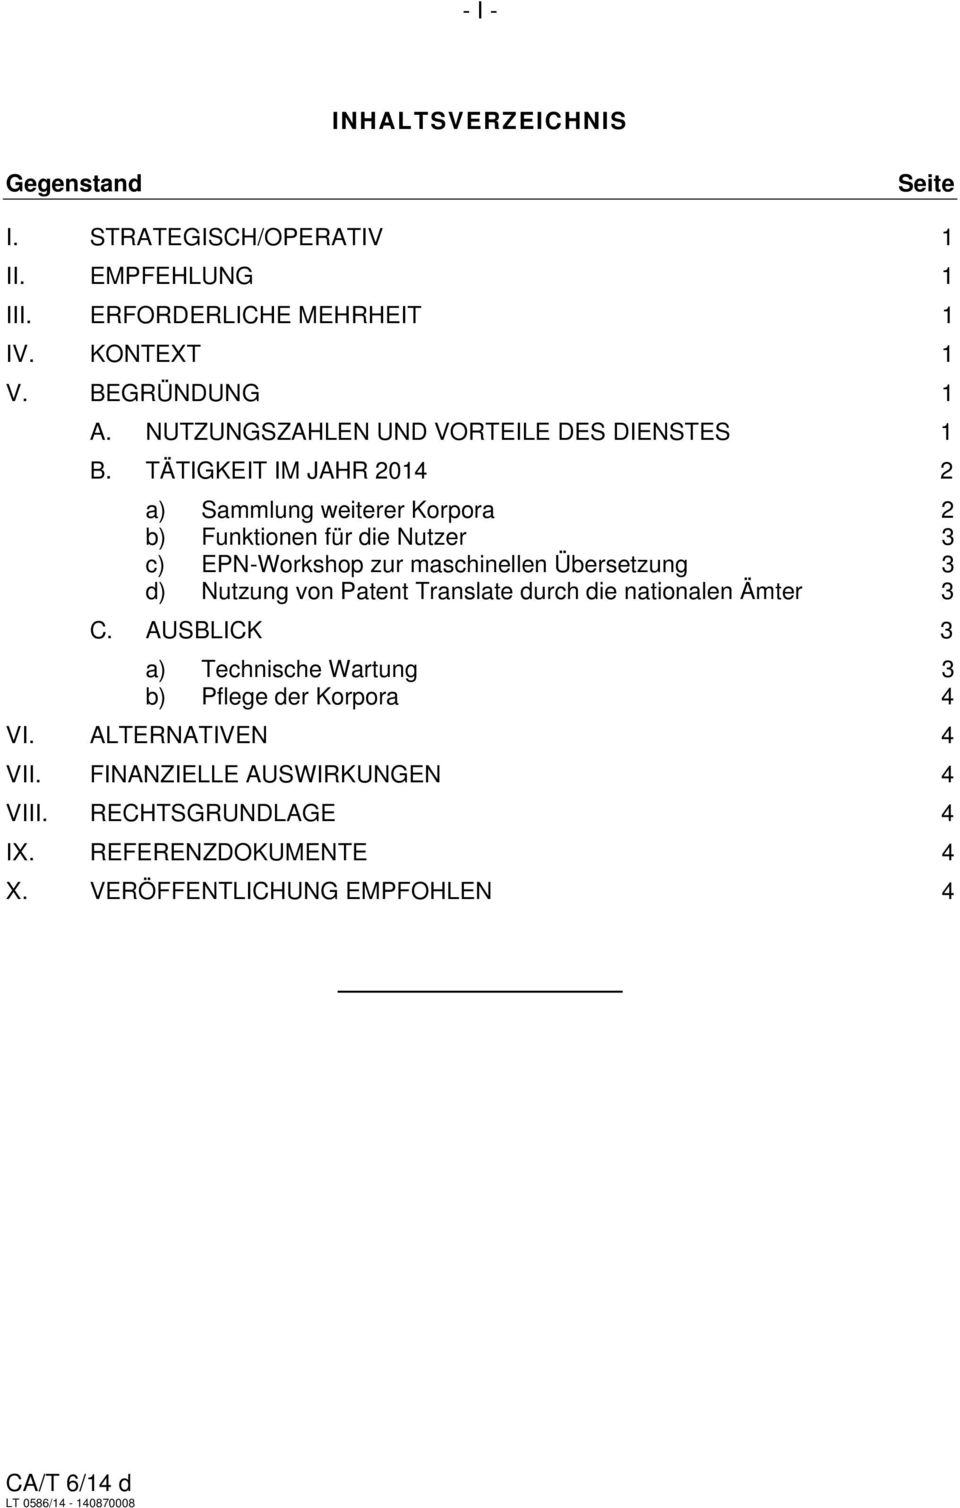 TÄTIGKEIT IM JAHR 2014 2 a) Sammlung weiterer Korpora 2 b) Funktionen für die Nutzer 3 c) EPN-Workshop zur maschinellen Übersetzung 3 d) Nutzung von